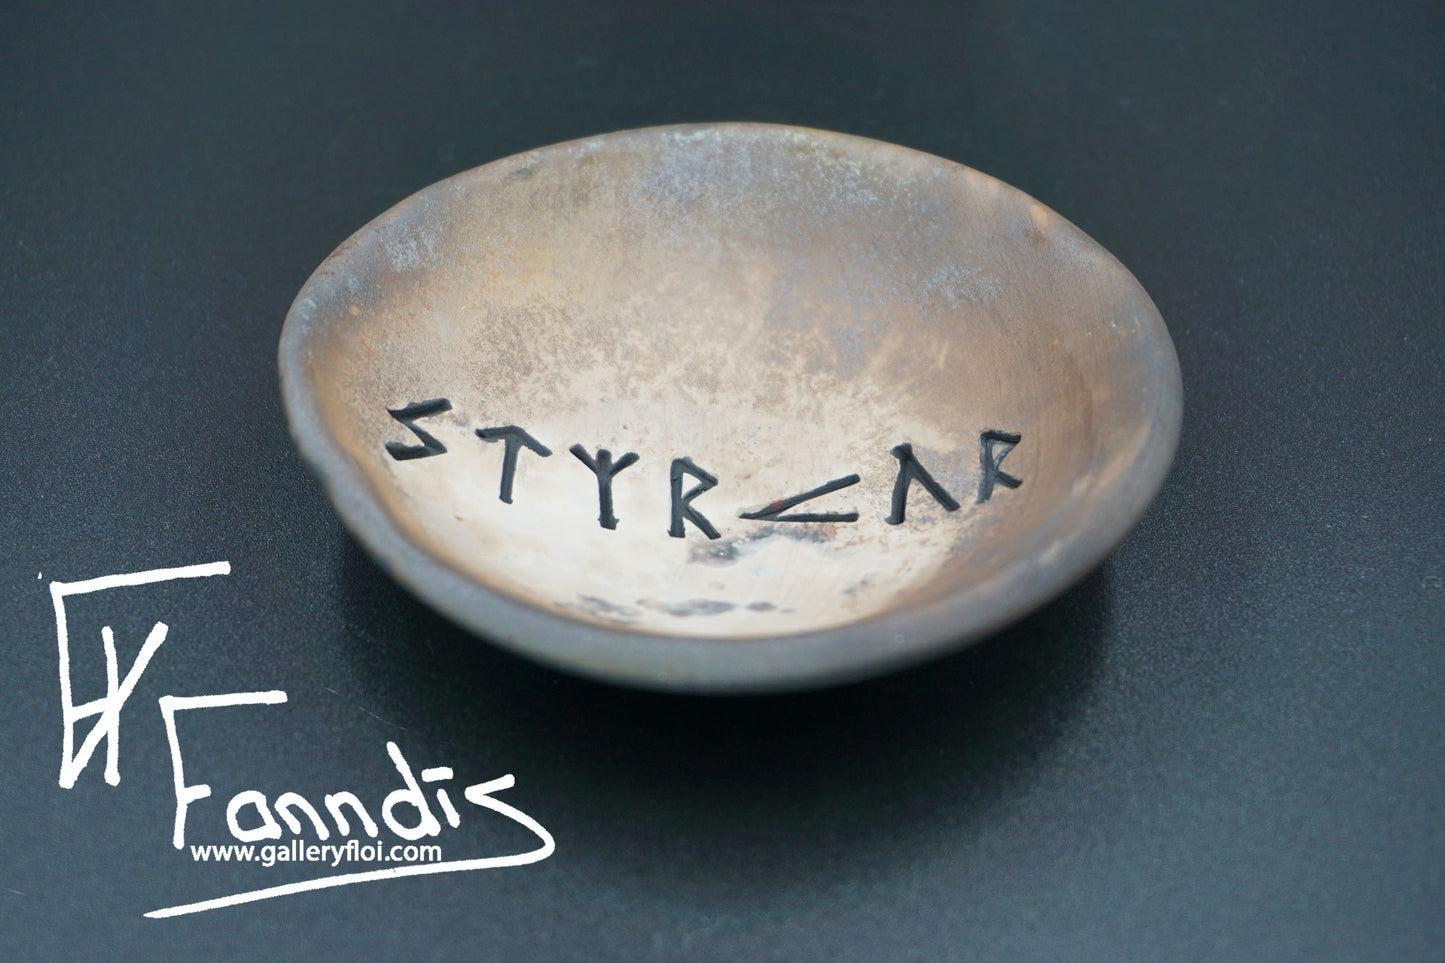 Gryfjubrennd skál með orðunum Styrkur / Pit fired bowl with the word Strength